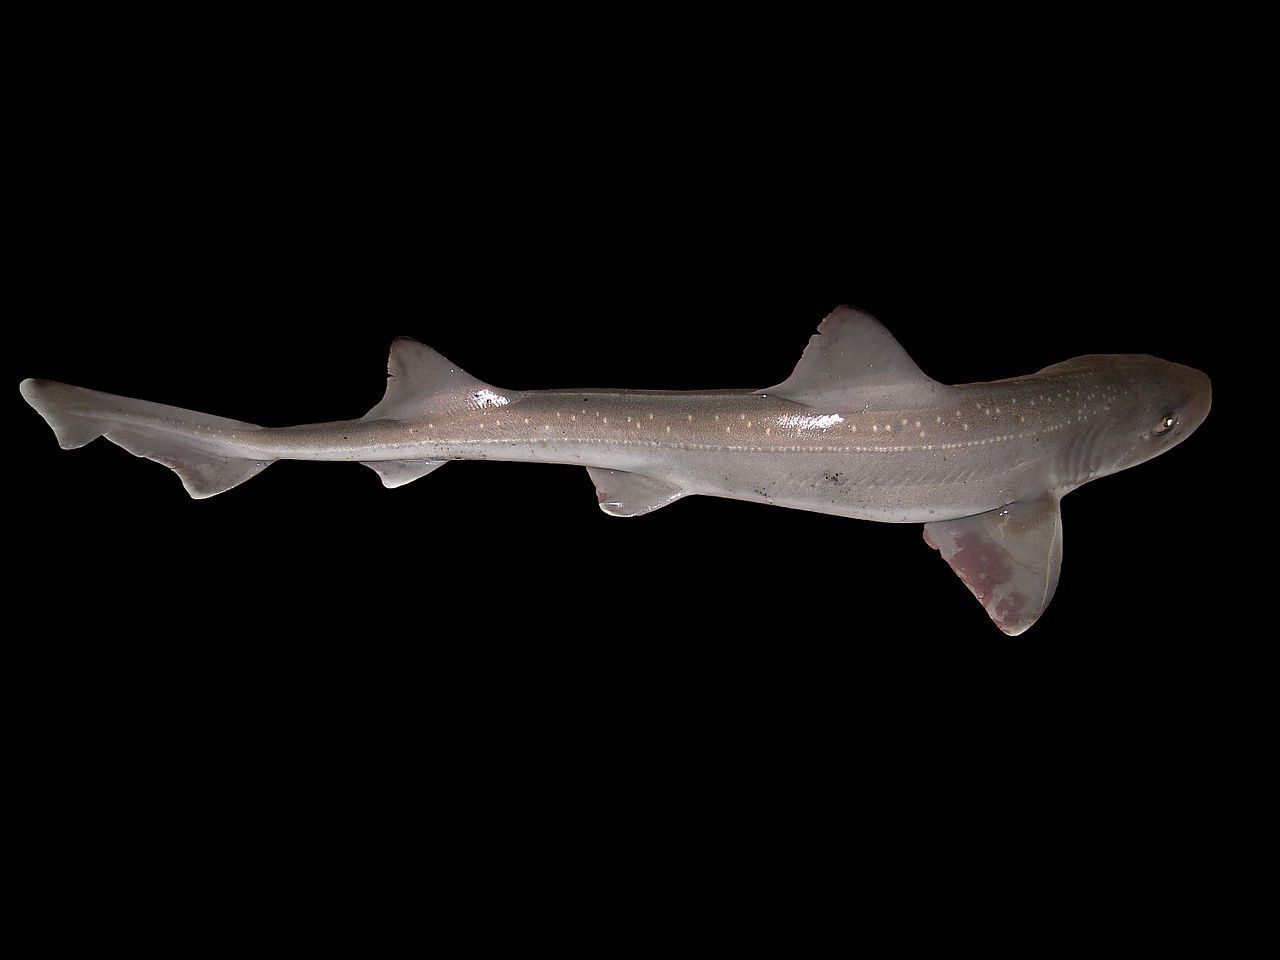 Gevlekte toonhaai, een van de gladde haaien die in de Nederlandse kustwateren voorkomt (foto: Hans Hillewaert)